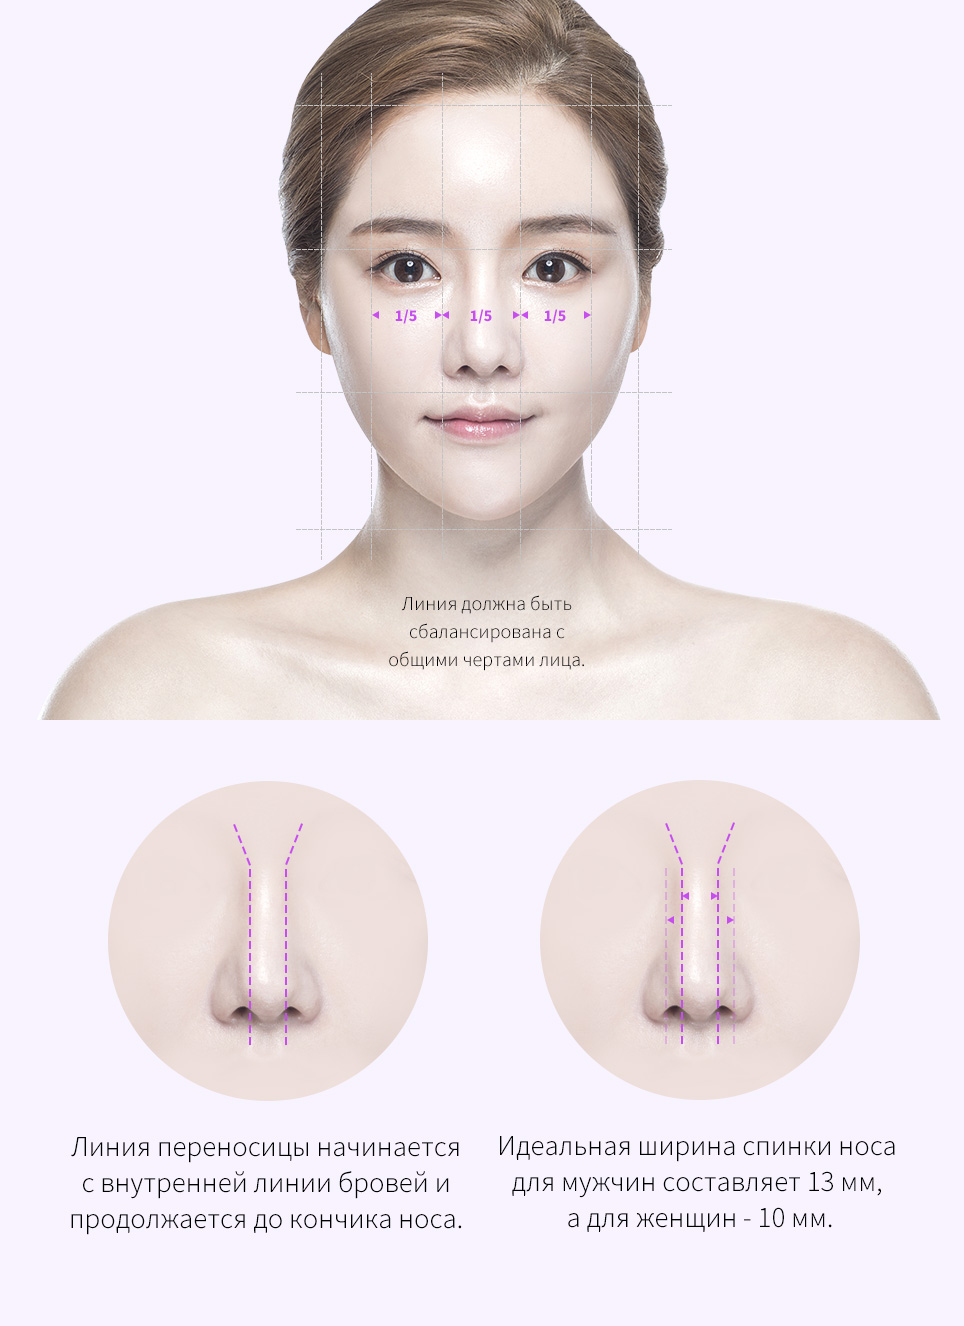 Правильные пропорции спинки носа